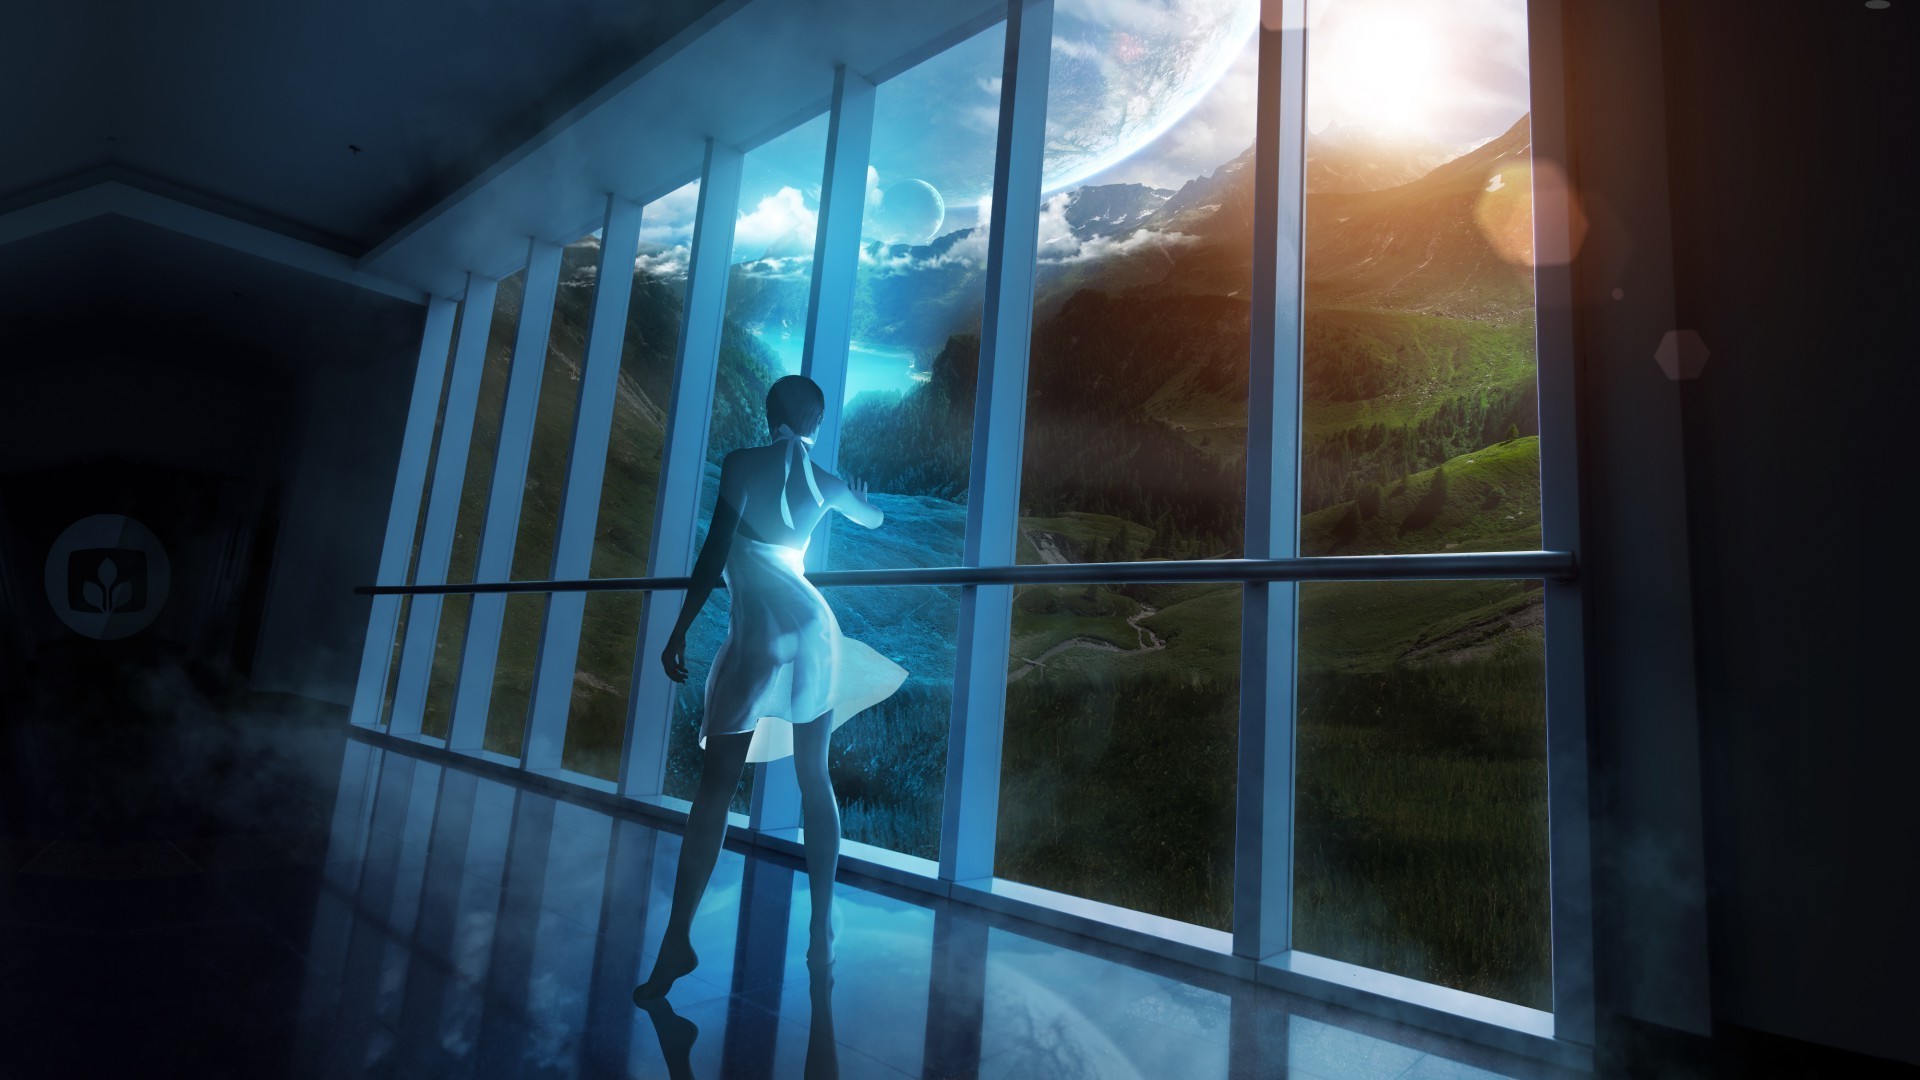 другие девушки окна отражение свет путешествия в помещении стекло дом солнце млекопитающее пейзаж клетка